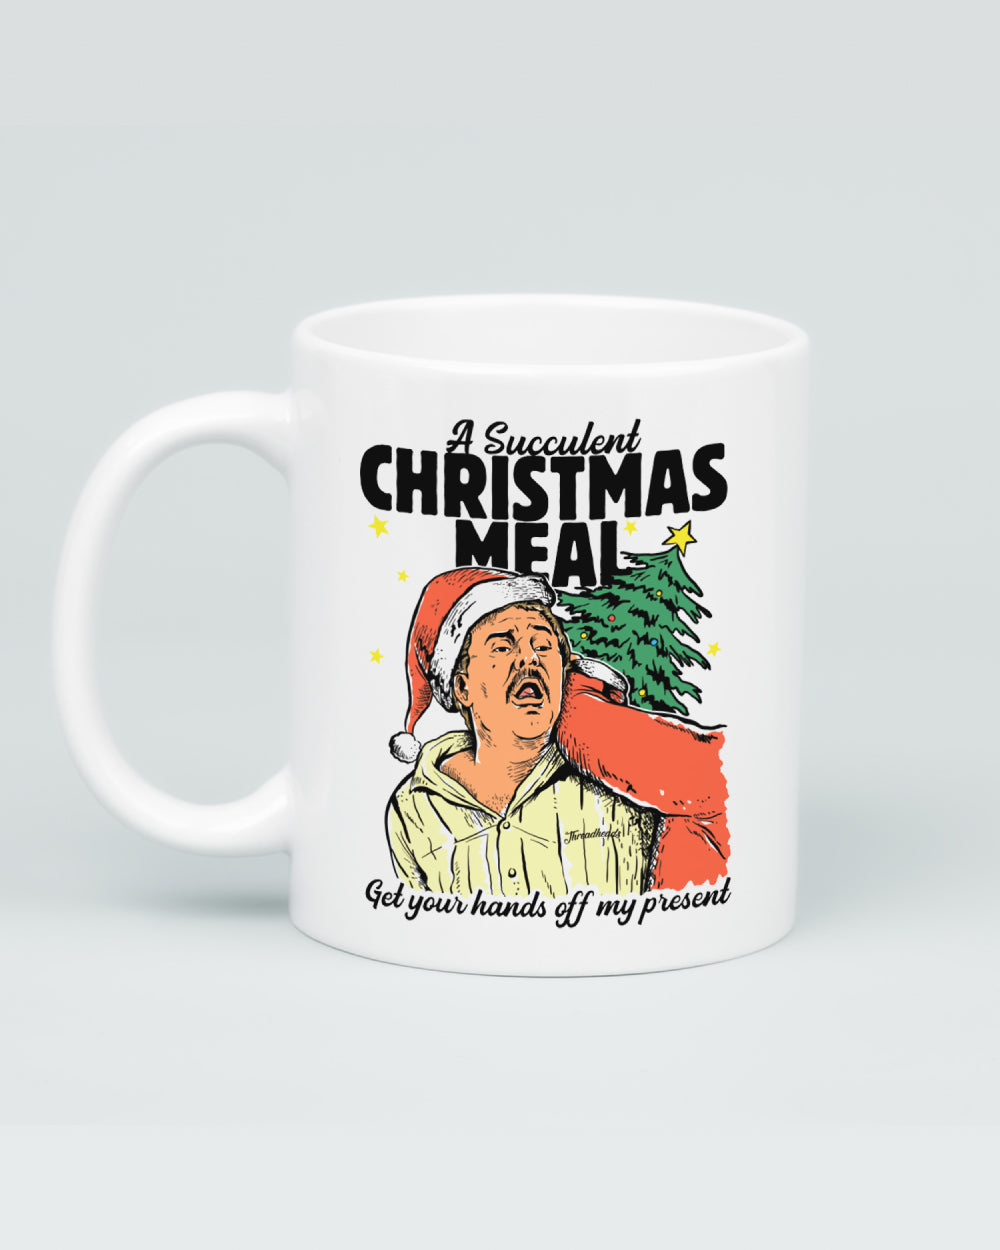 Succulent Christmas Meal Mug